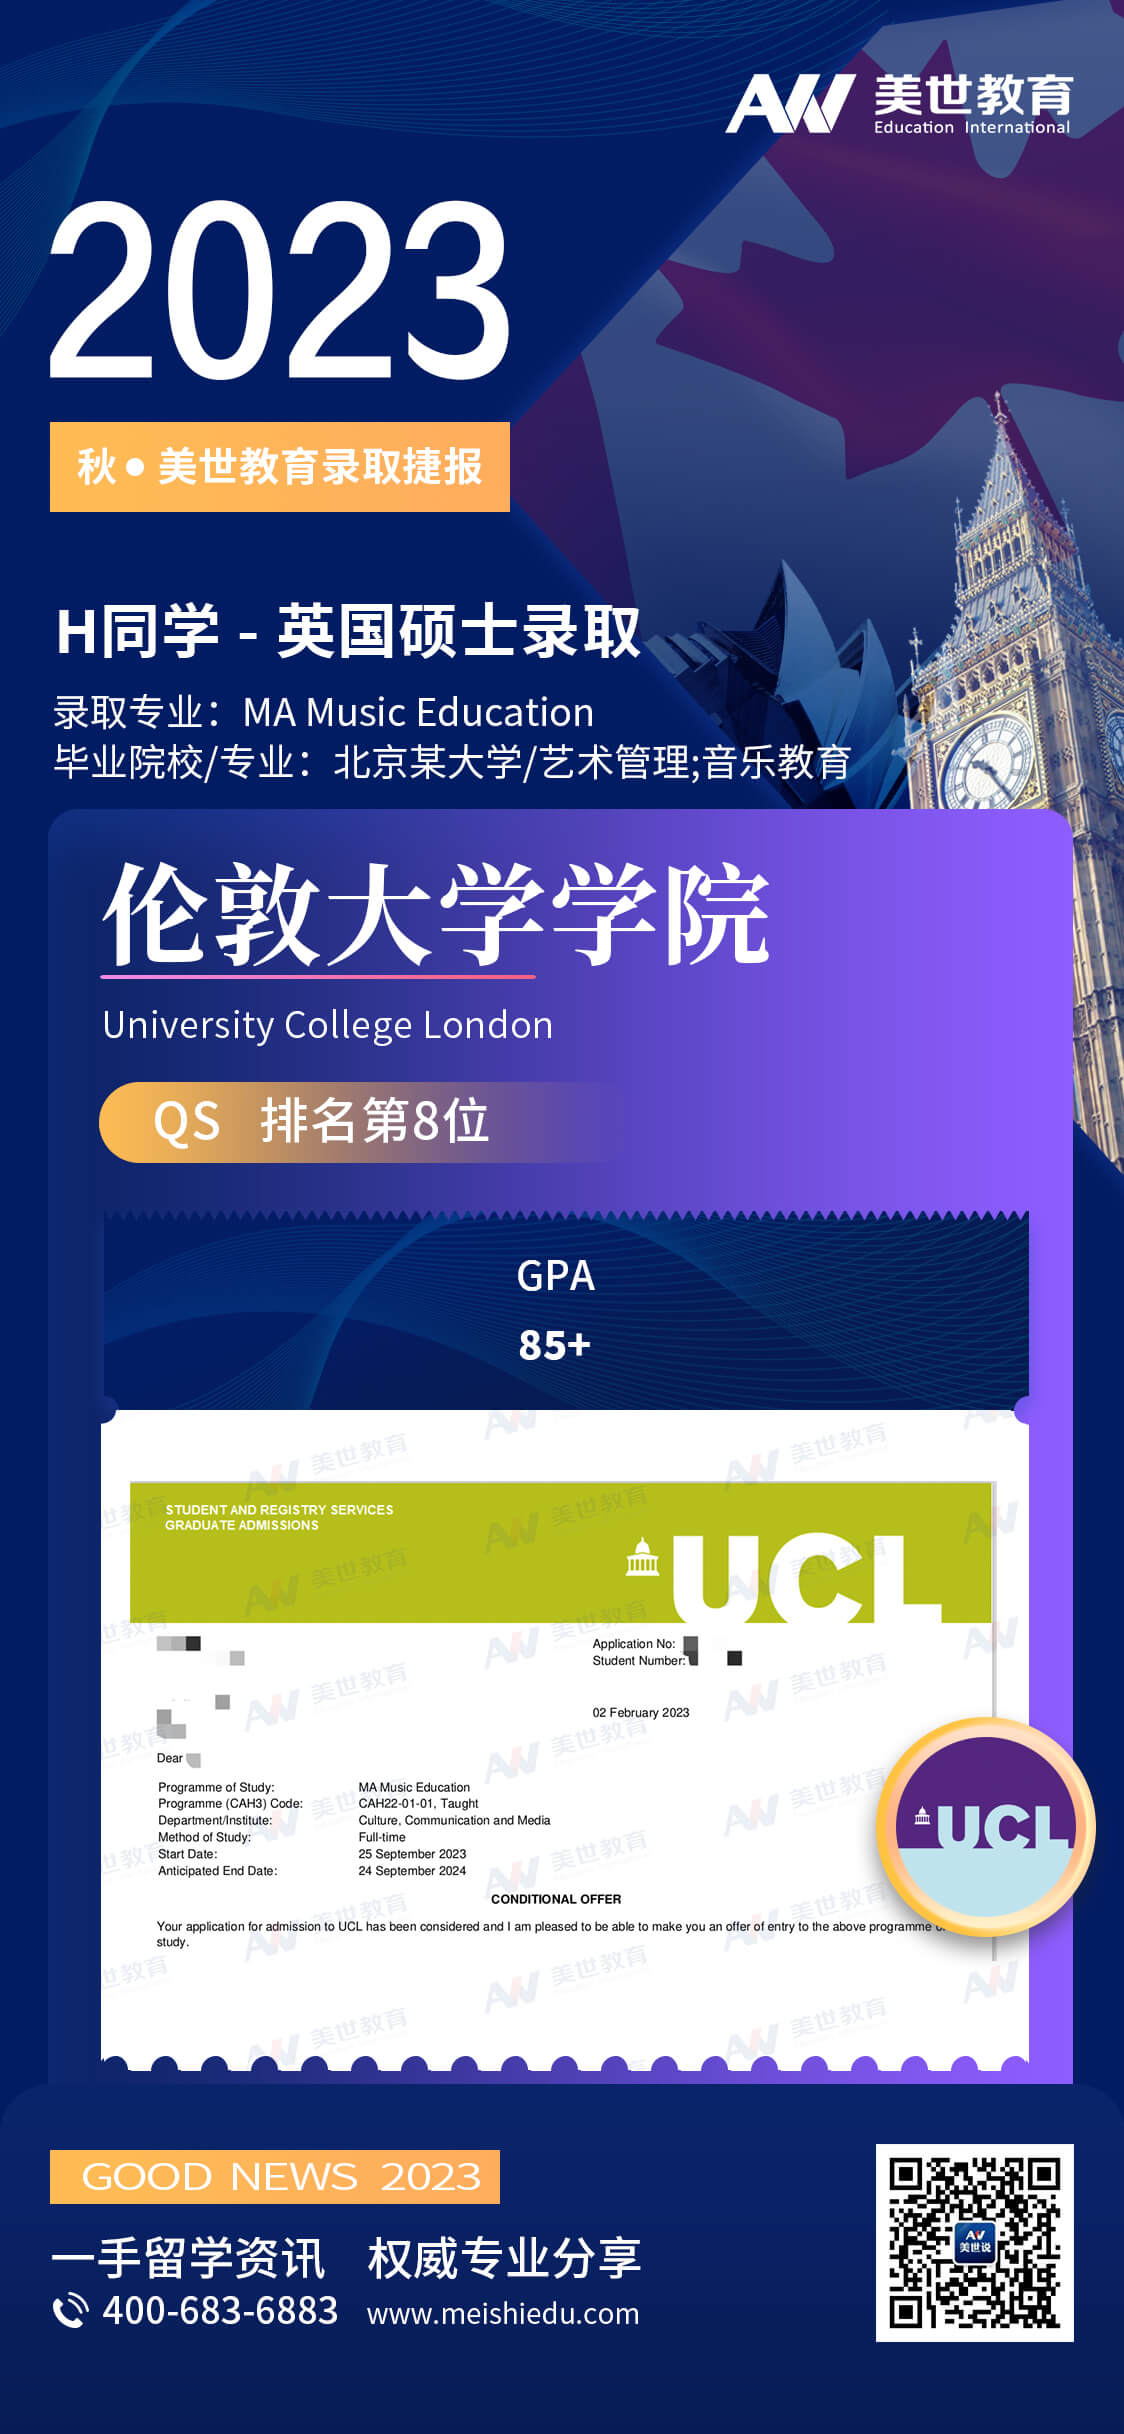 胡泰恒-UCL-音乐教育 (1).jpg